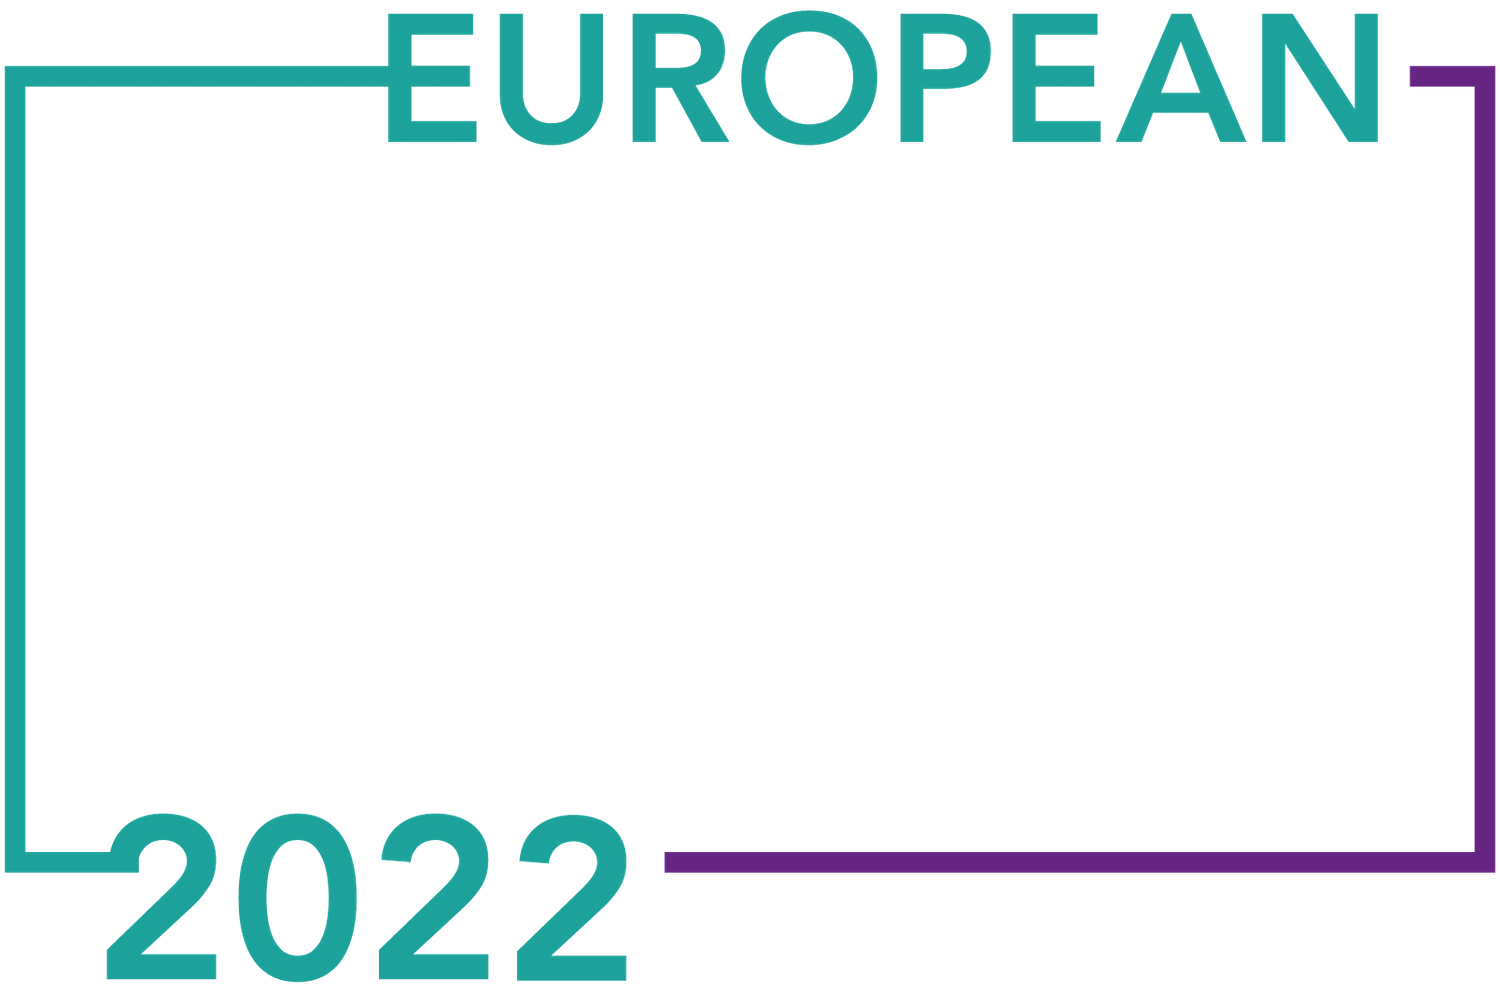 European Agency Awards logo